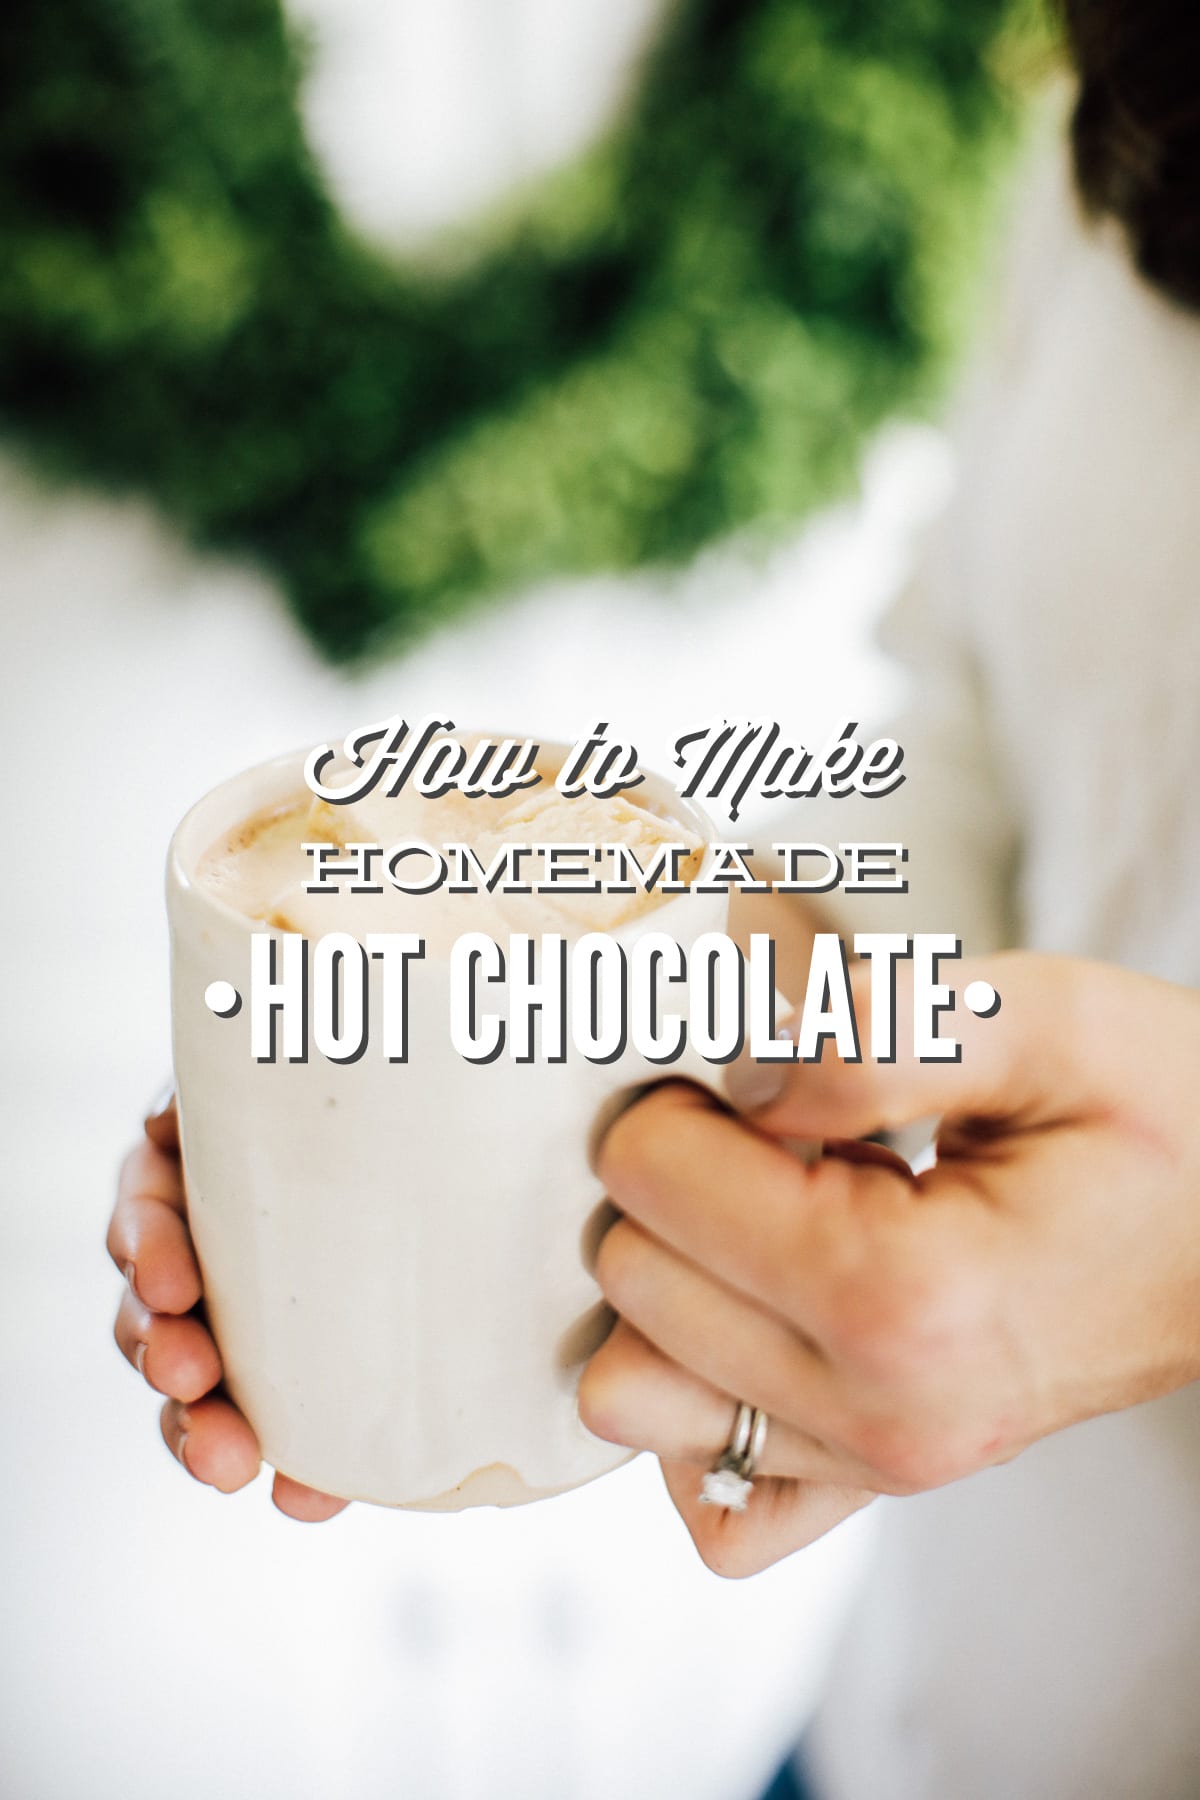 How to Make Homemade Hot Chocolate